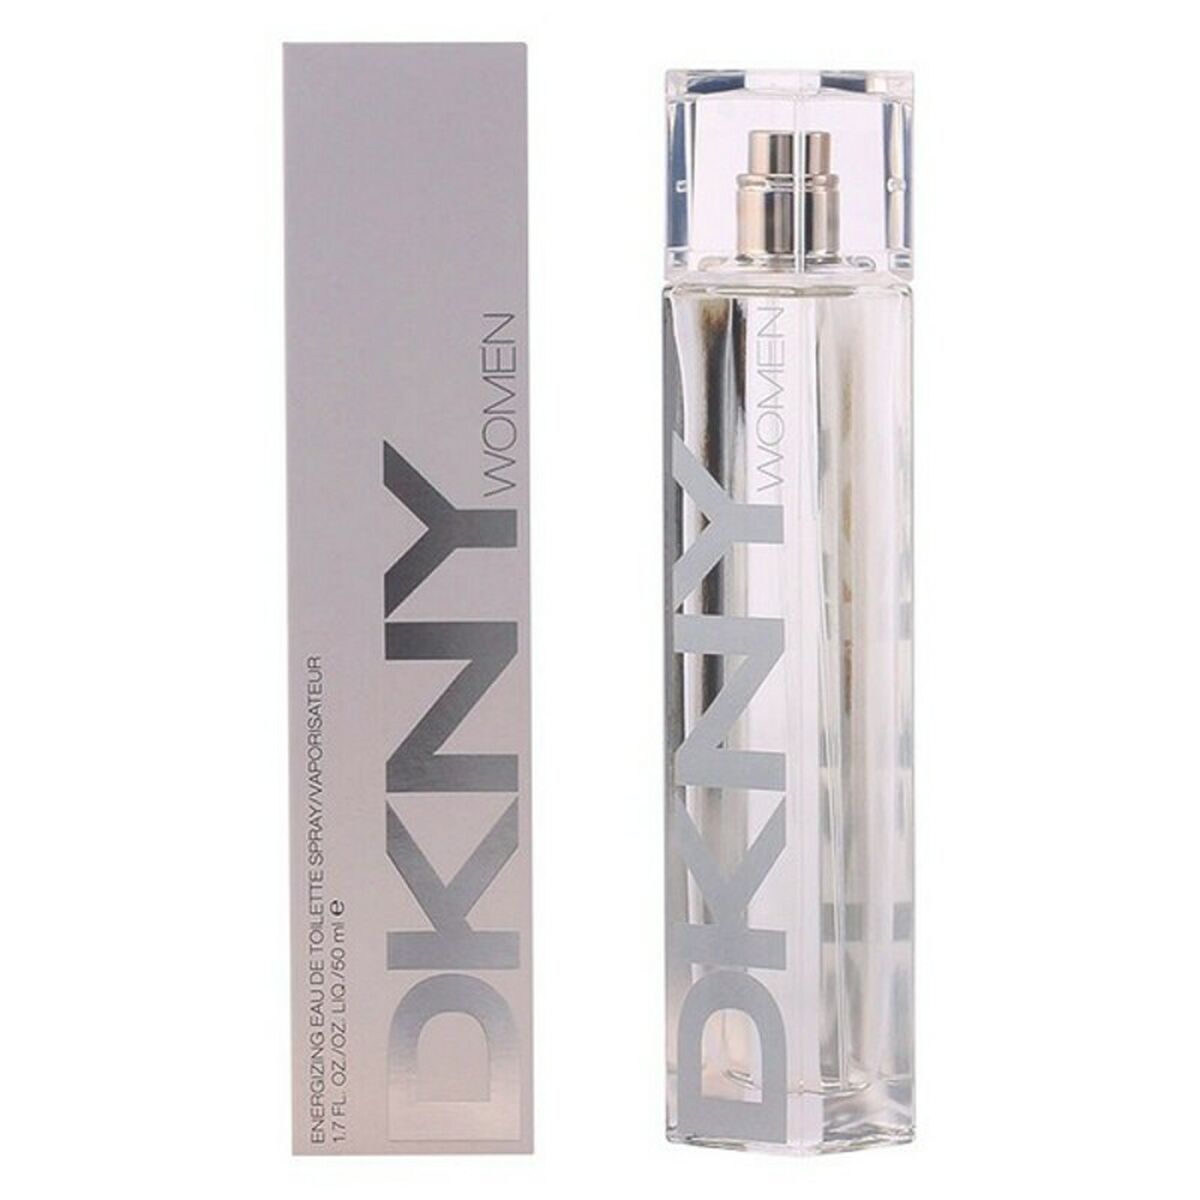 Women's Perfume Dkny Donna Karan EDT energizing